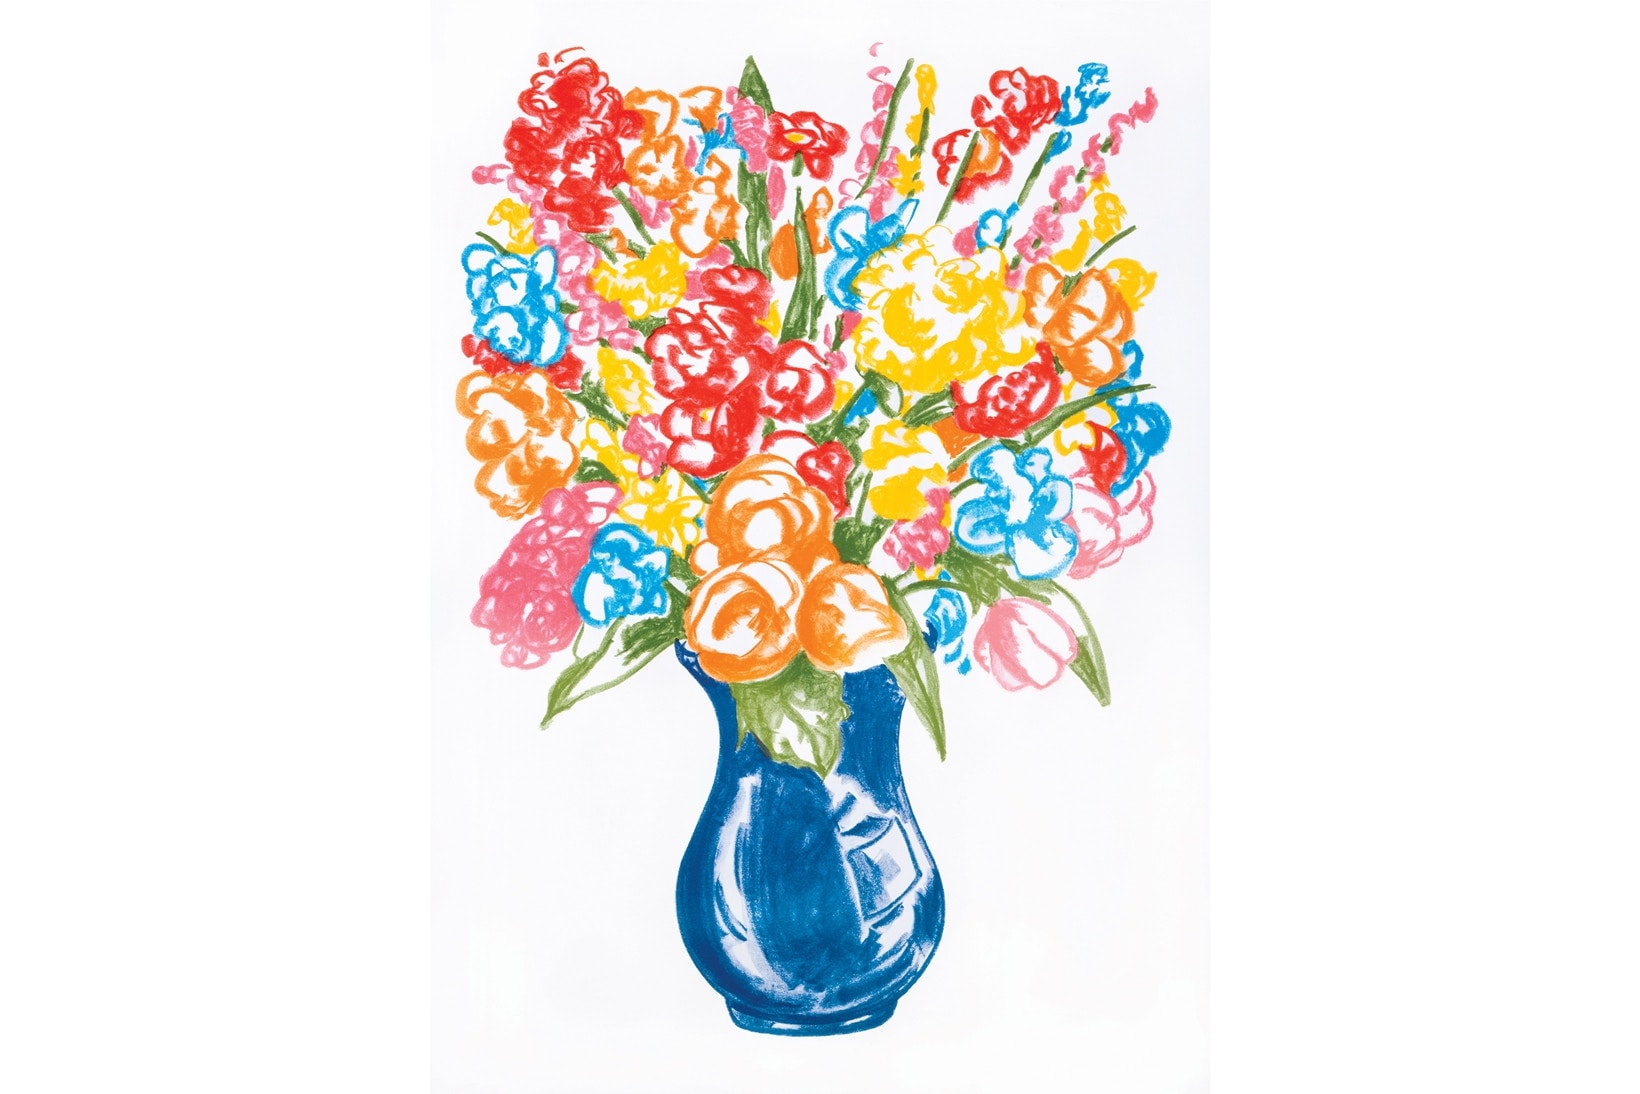 Jeff Koons 推出全新印花品及繪畫系列